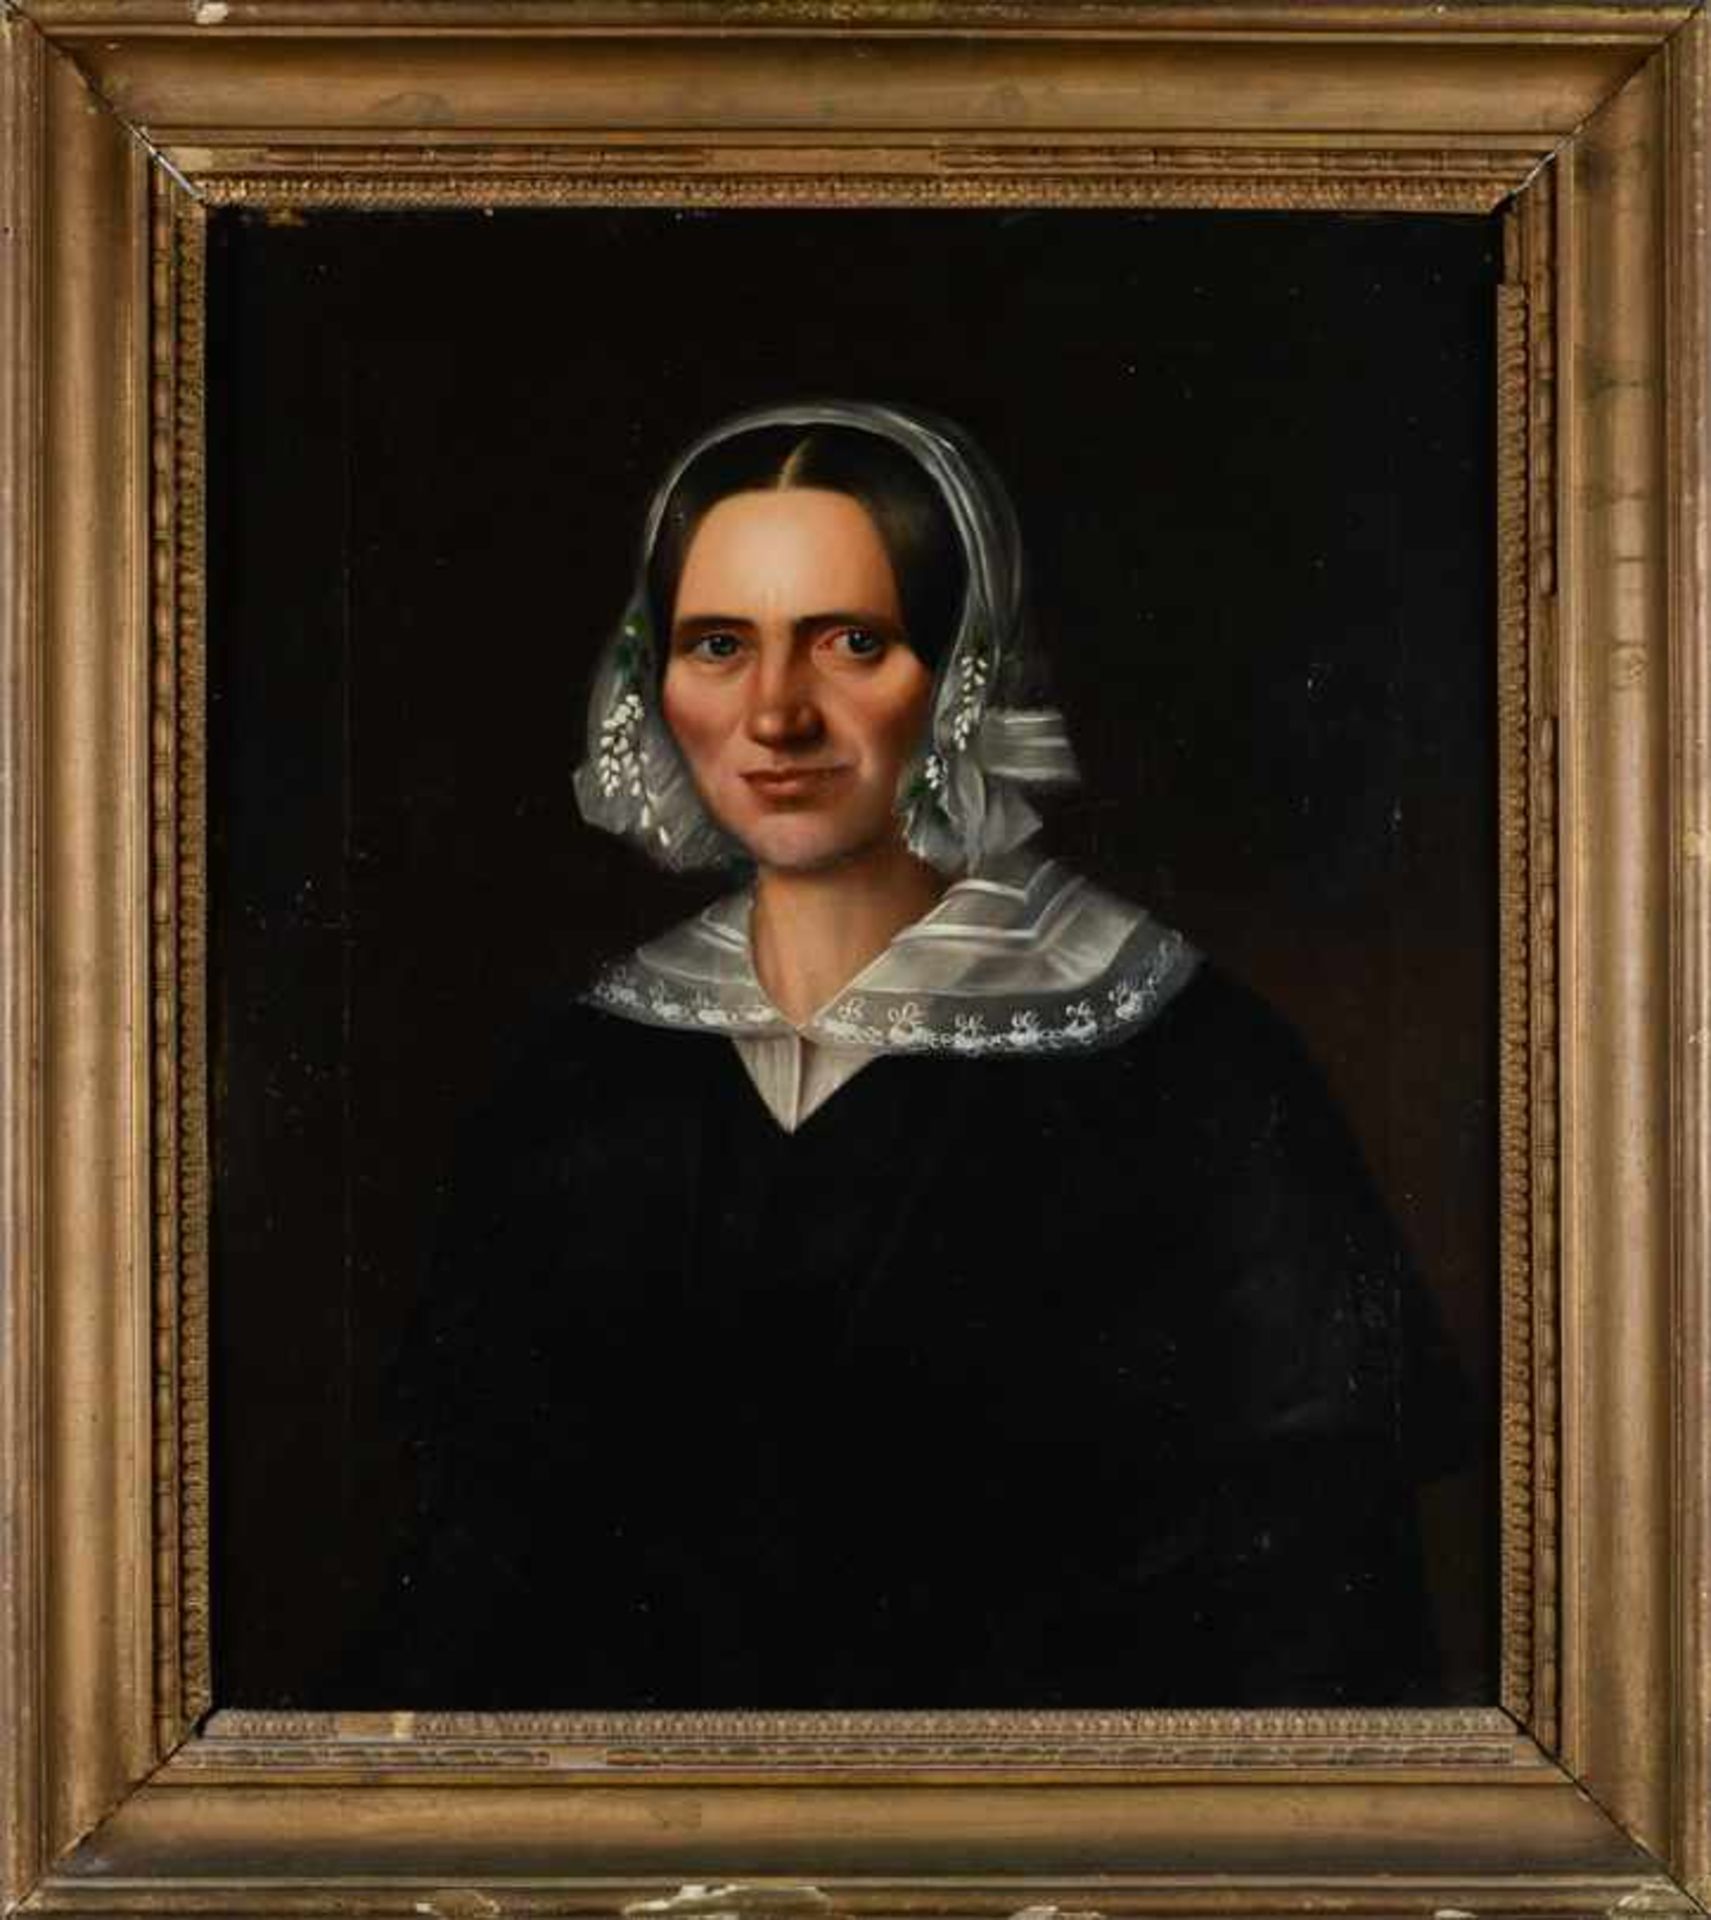 Junge Frau mit Spitzenhaube. Biedermeier-Porträt.Öl auf Leinwand, Datierung um 1840/60,